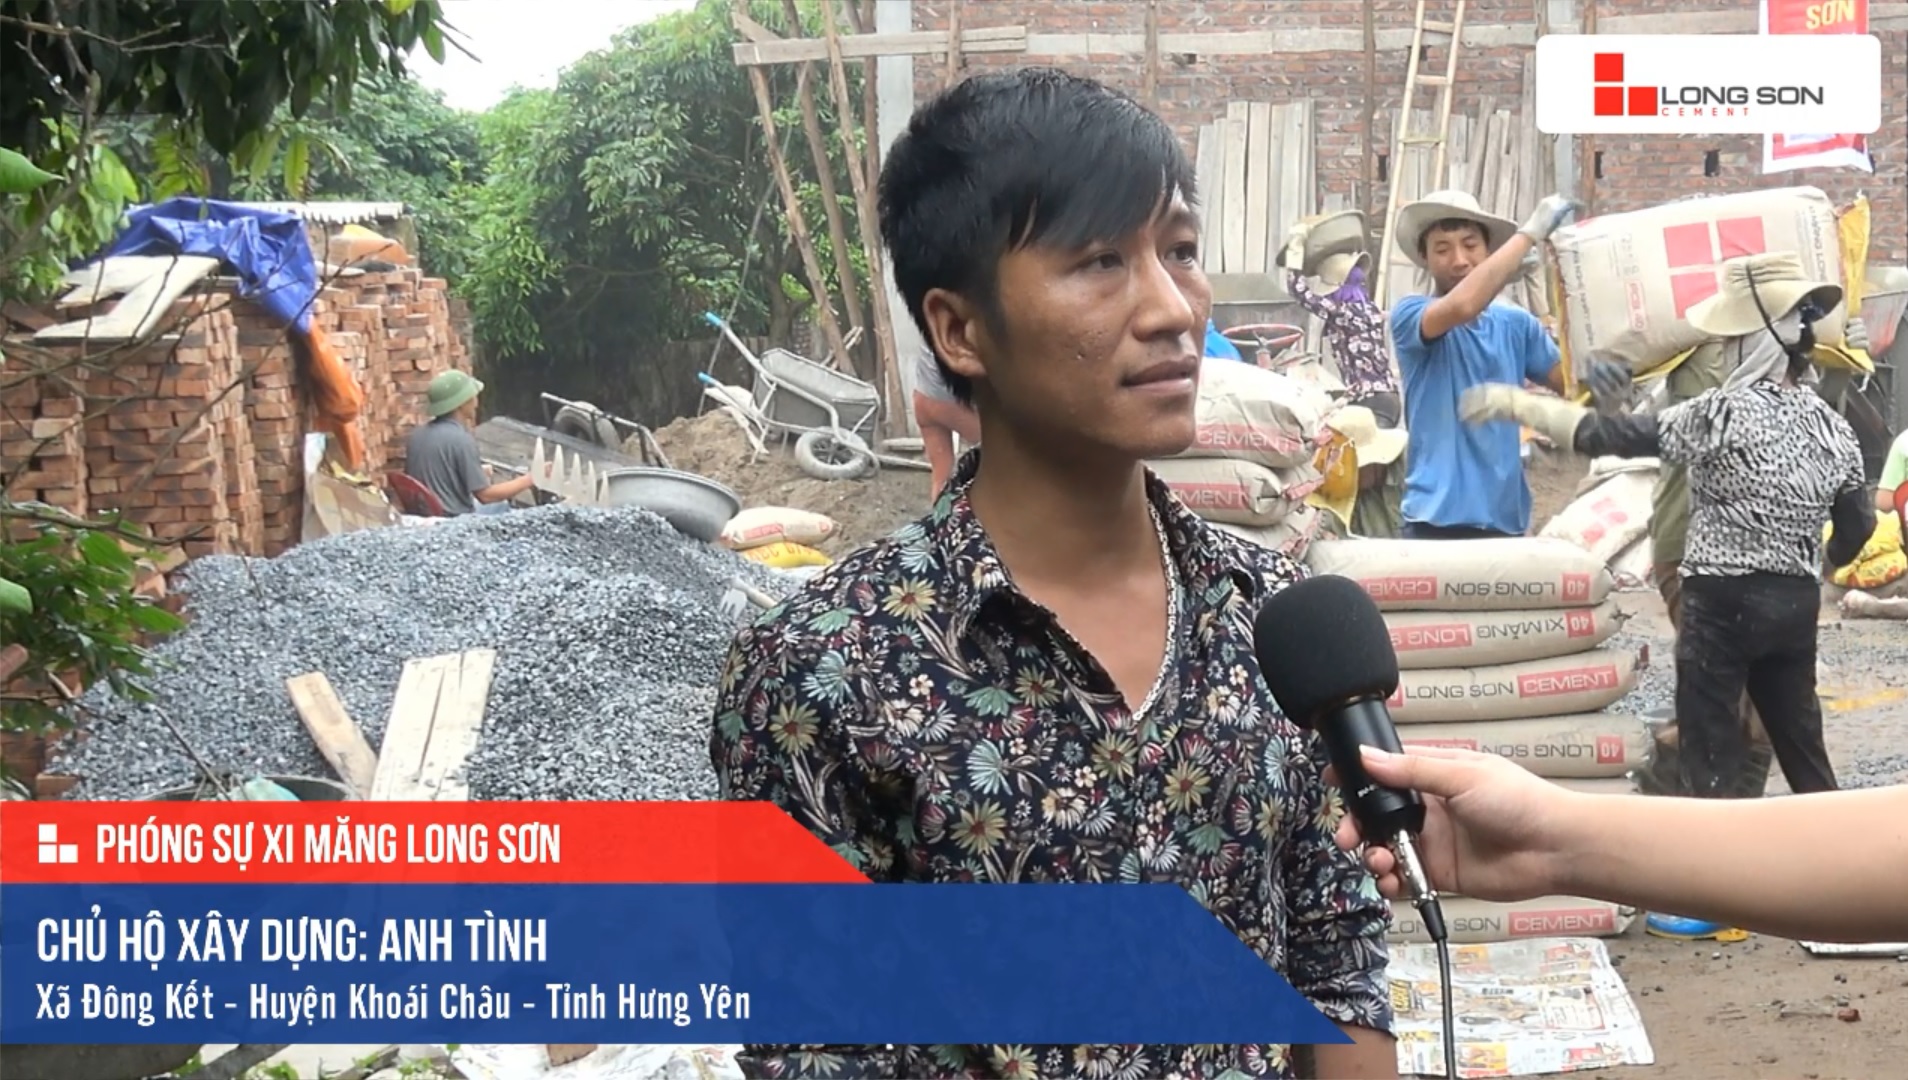 Phóng sự công trình sử dụng Xi măng Long Sơn tại Hưng Yên 12.04.2019